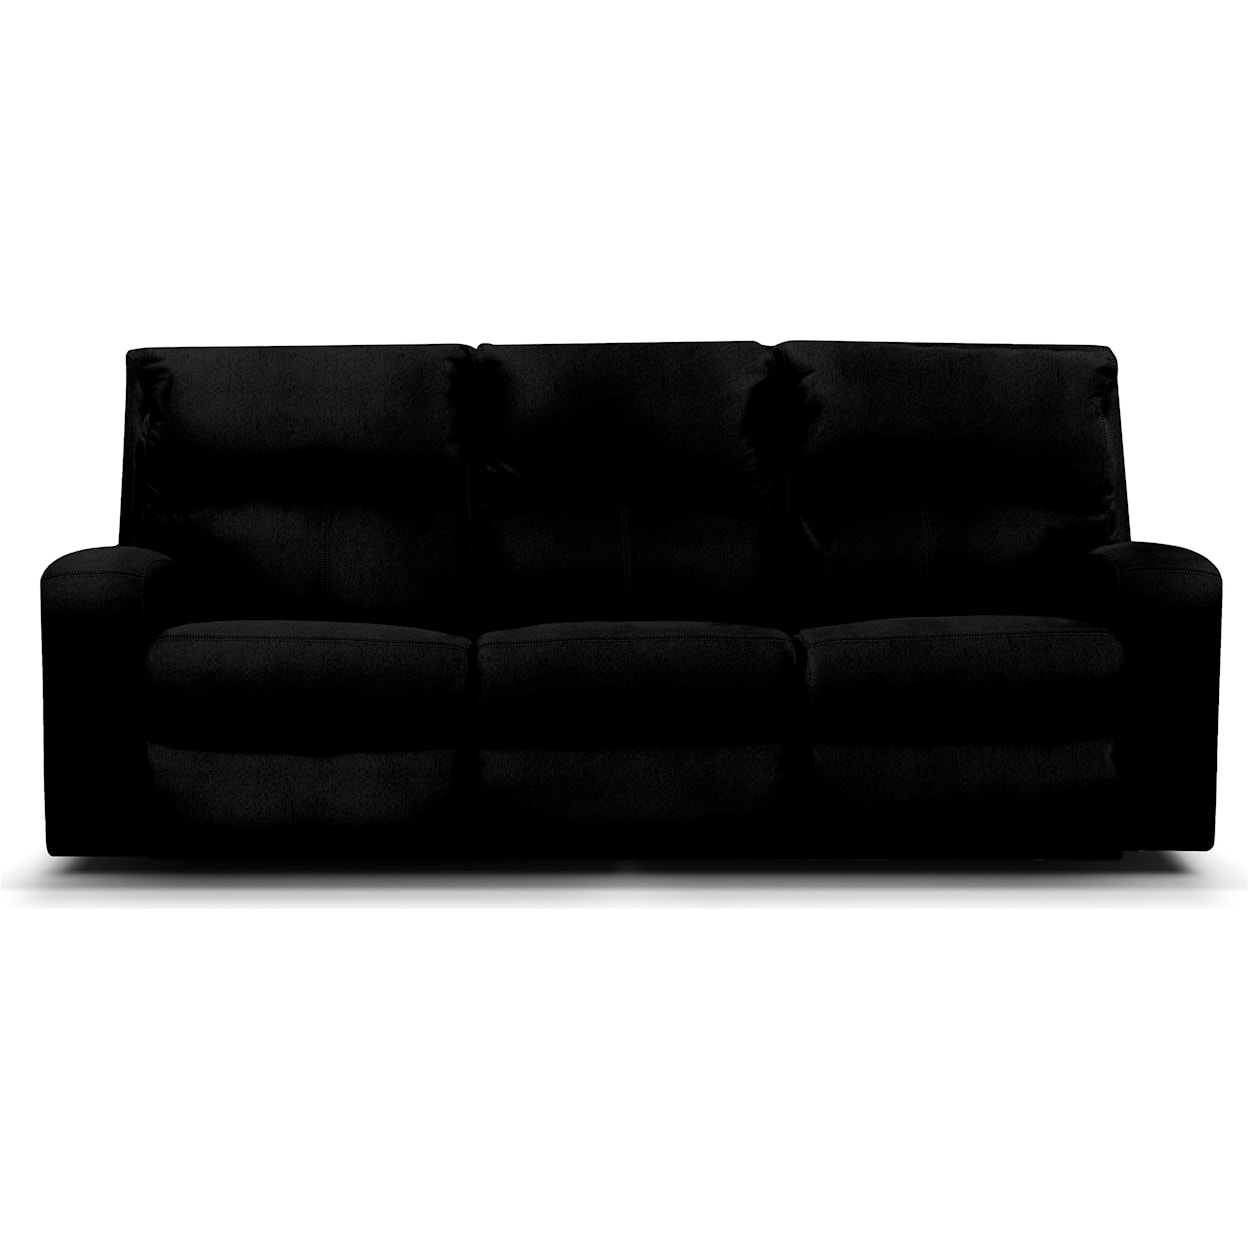 Dimensions EZ2200/H Series Power Dual Reclining Sofa